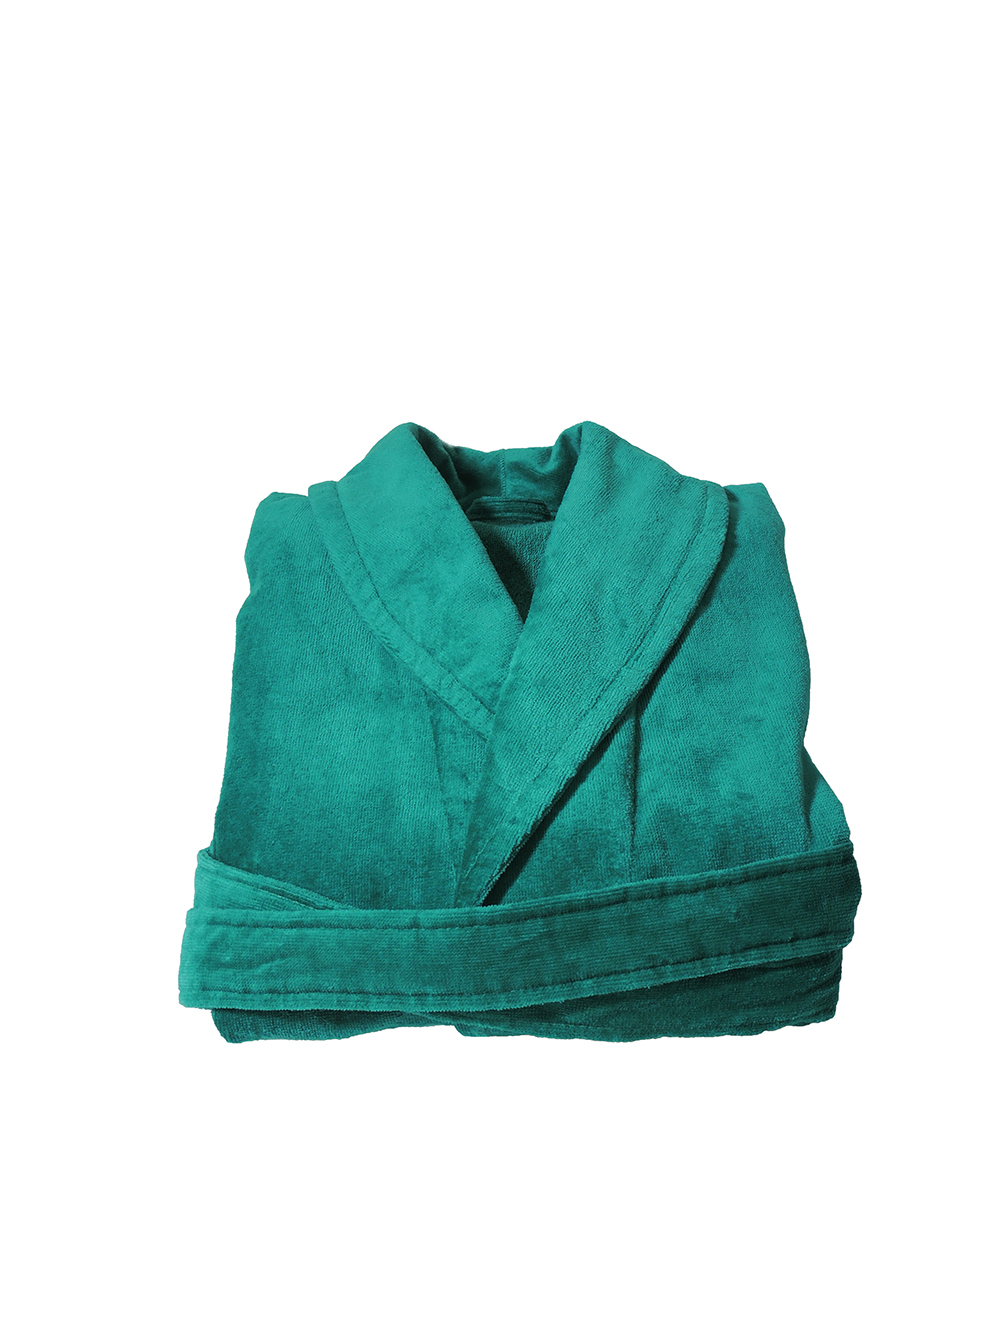 Aqua-zeegroene veloursbadstof badjas met sjaalkraag van Vandyck-0